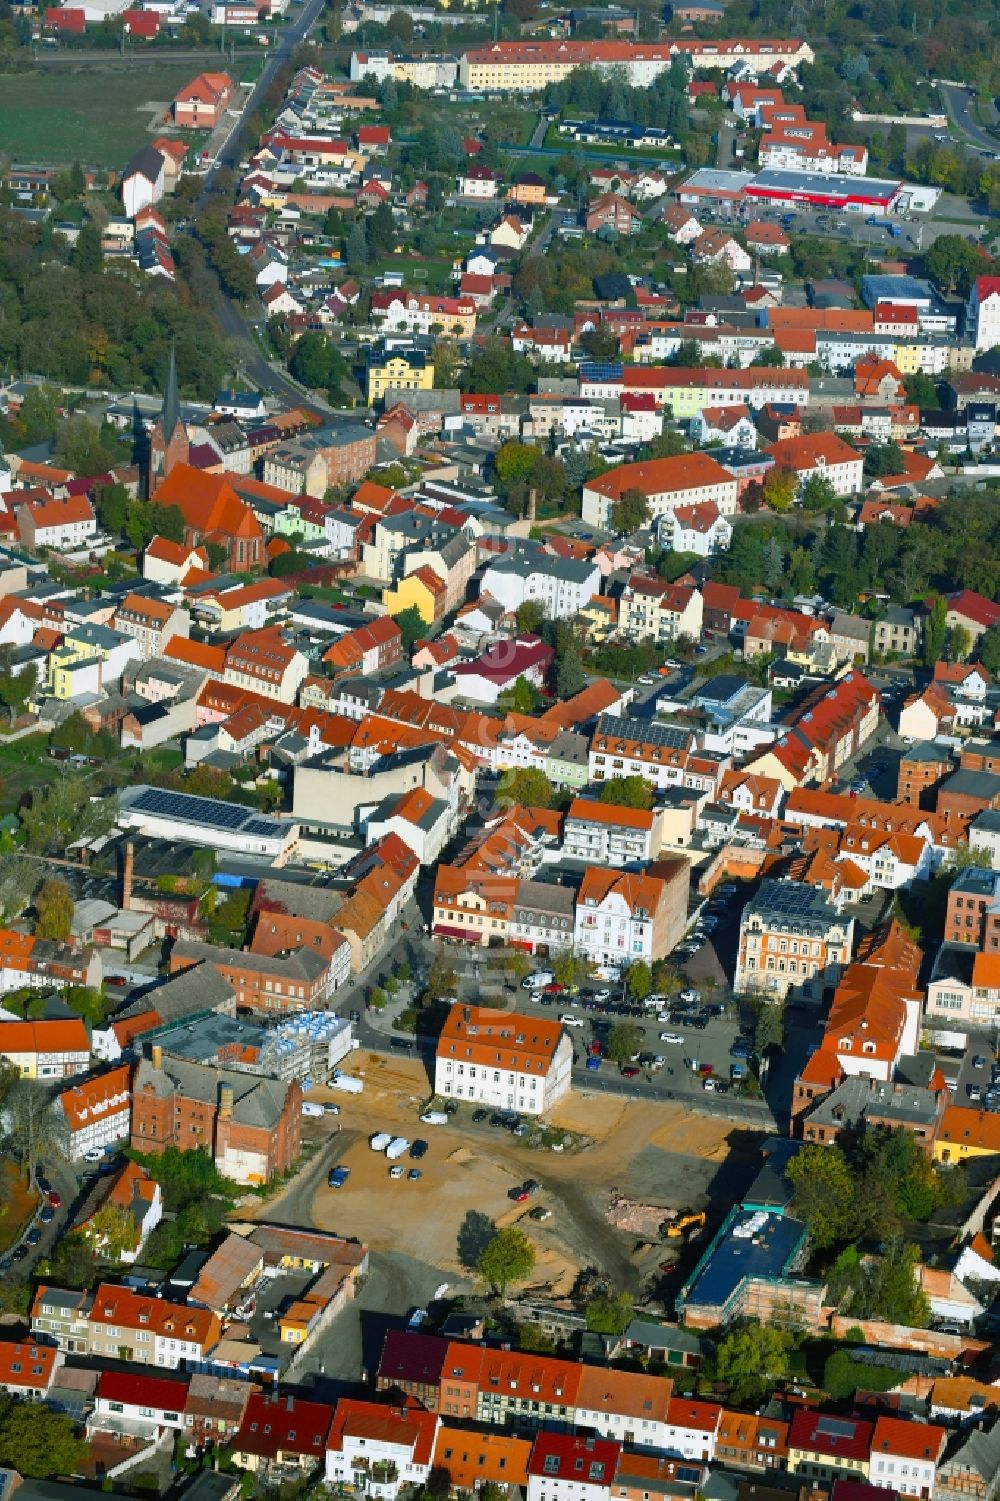 Luftbild Burg - Abrißfläche des Gebäudes Wohnhauses an der Brüderstraße in Burg im Bundesland Sachsen-Anhalt, Deutschland